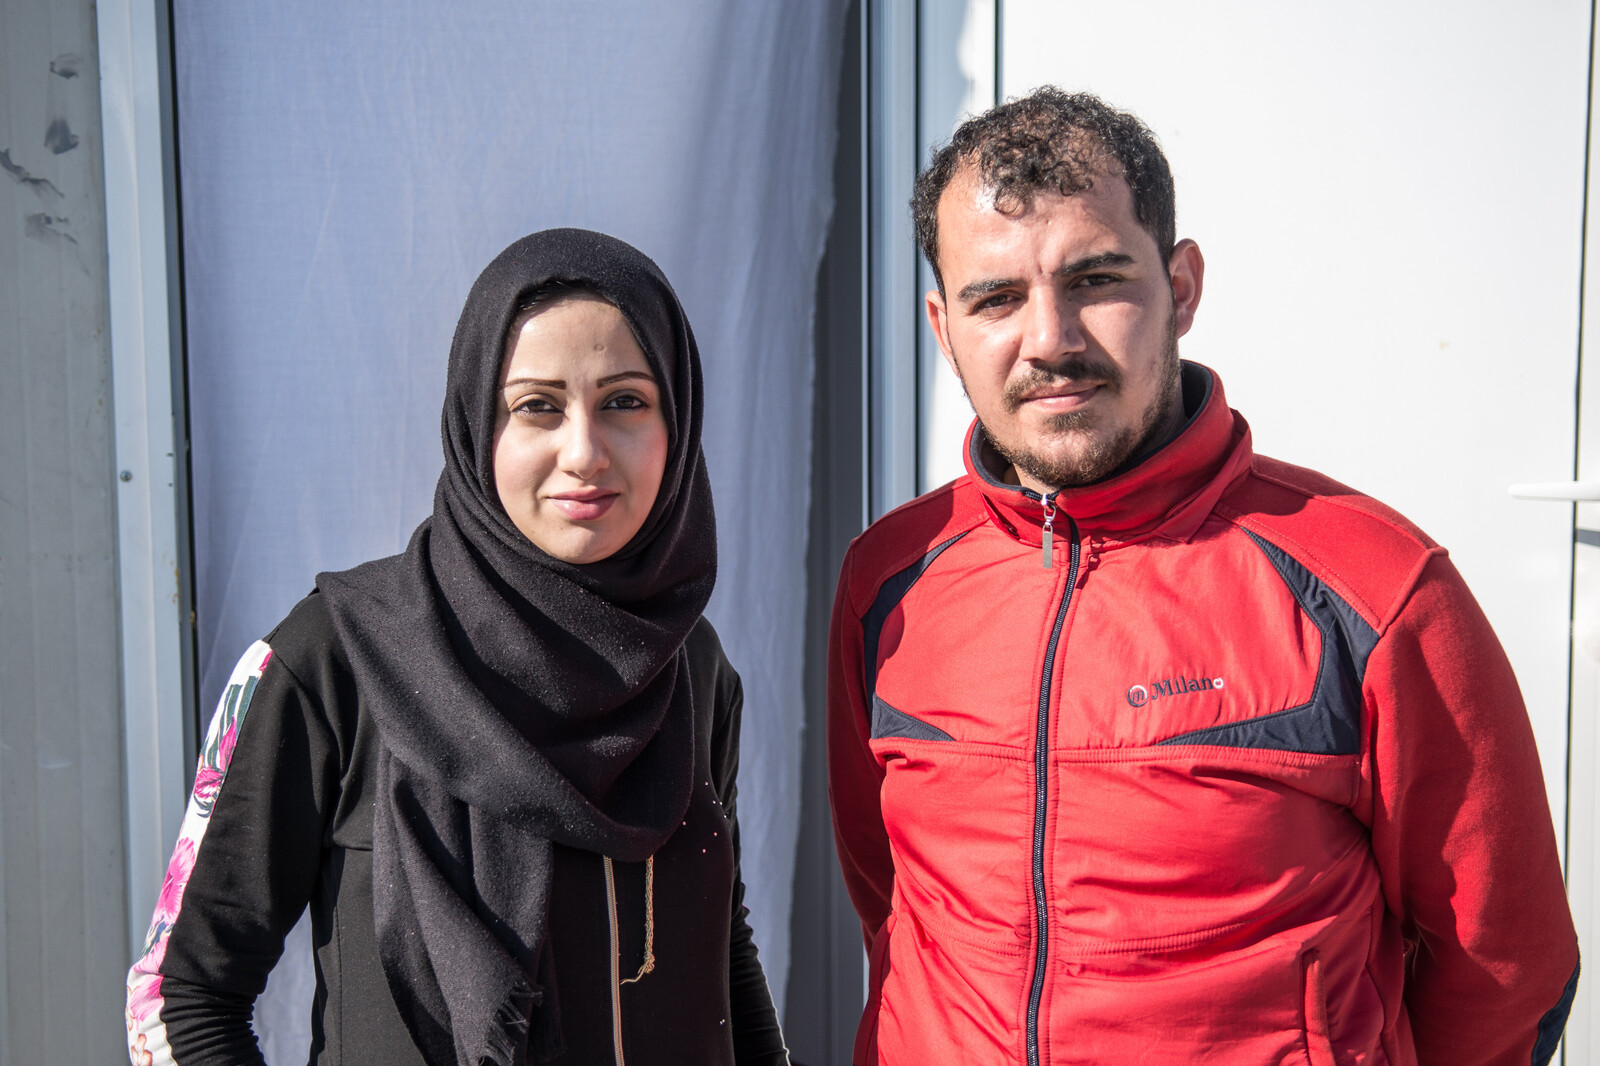 Das Paar Marwa und Odey sah keinen anderen Ausweg als die Flucht aus Syrien